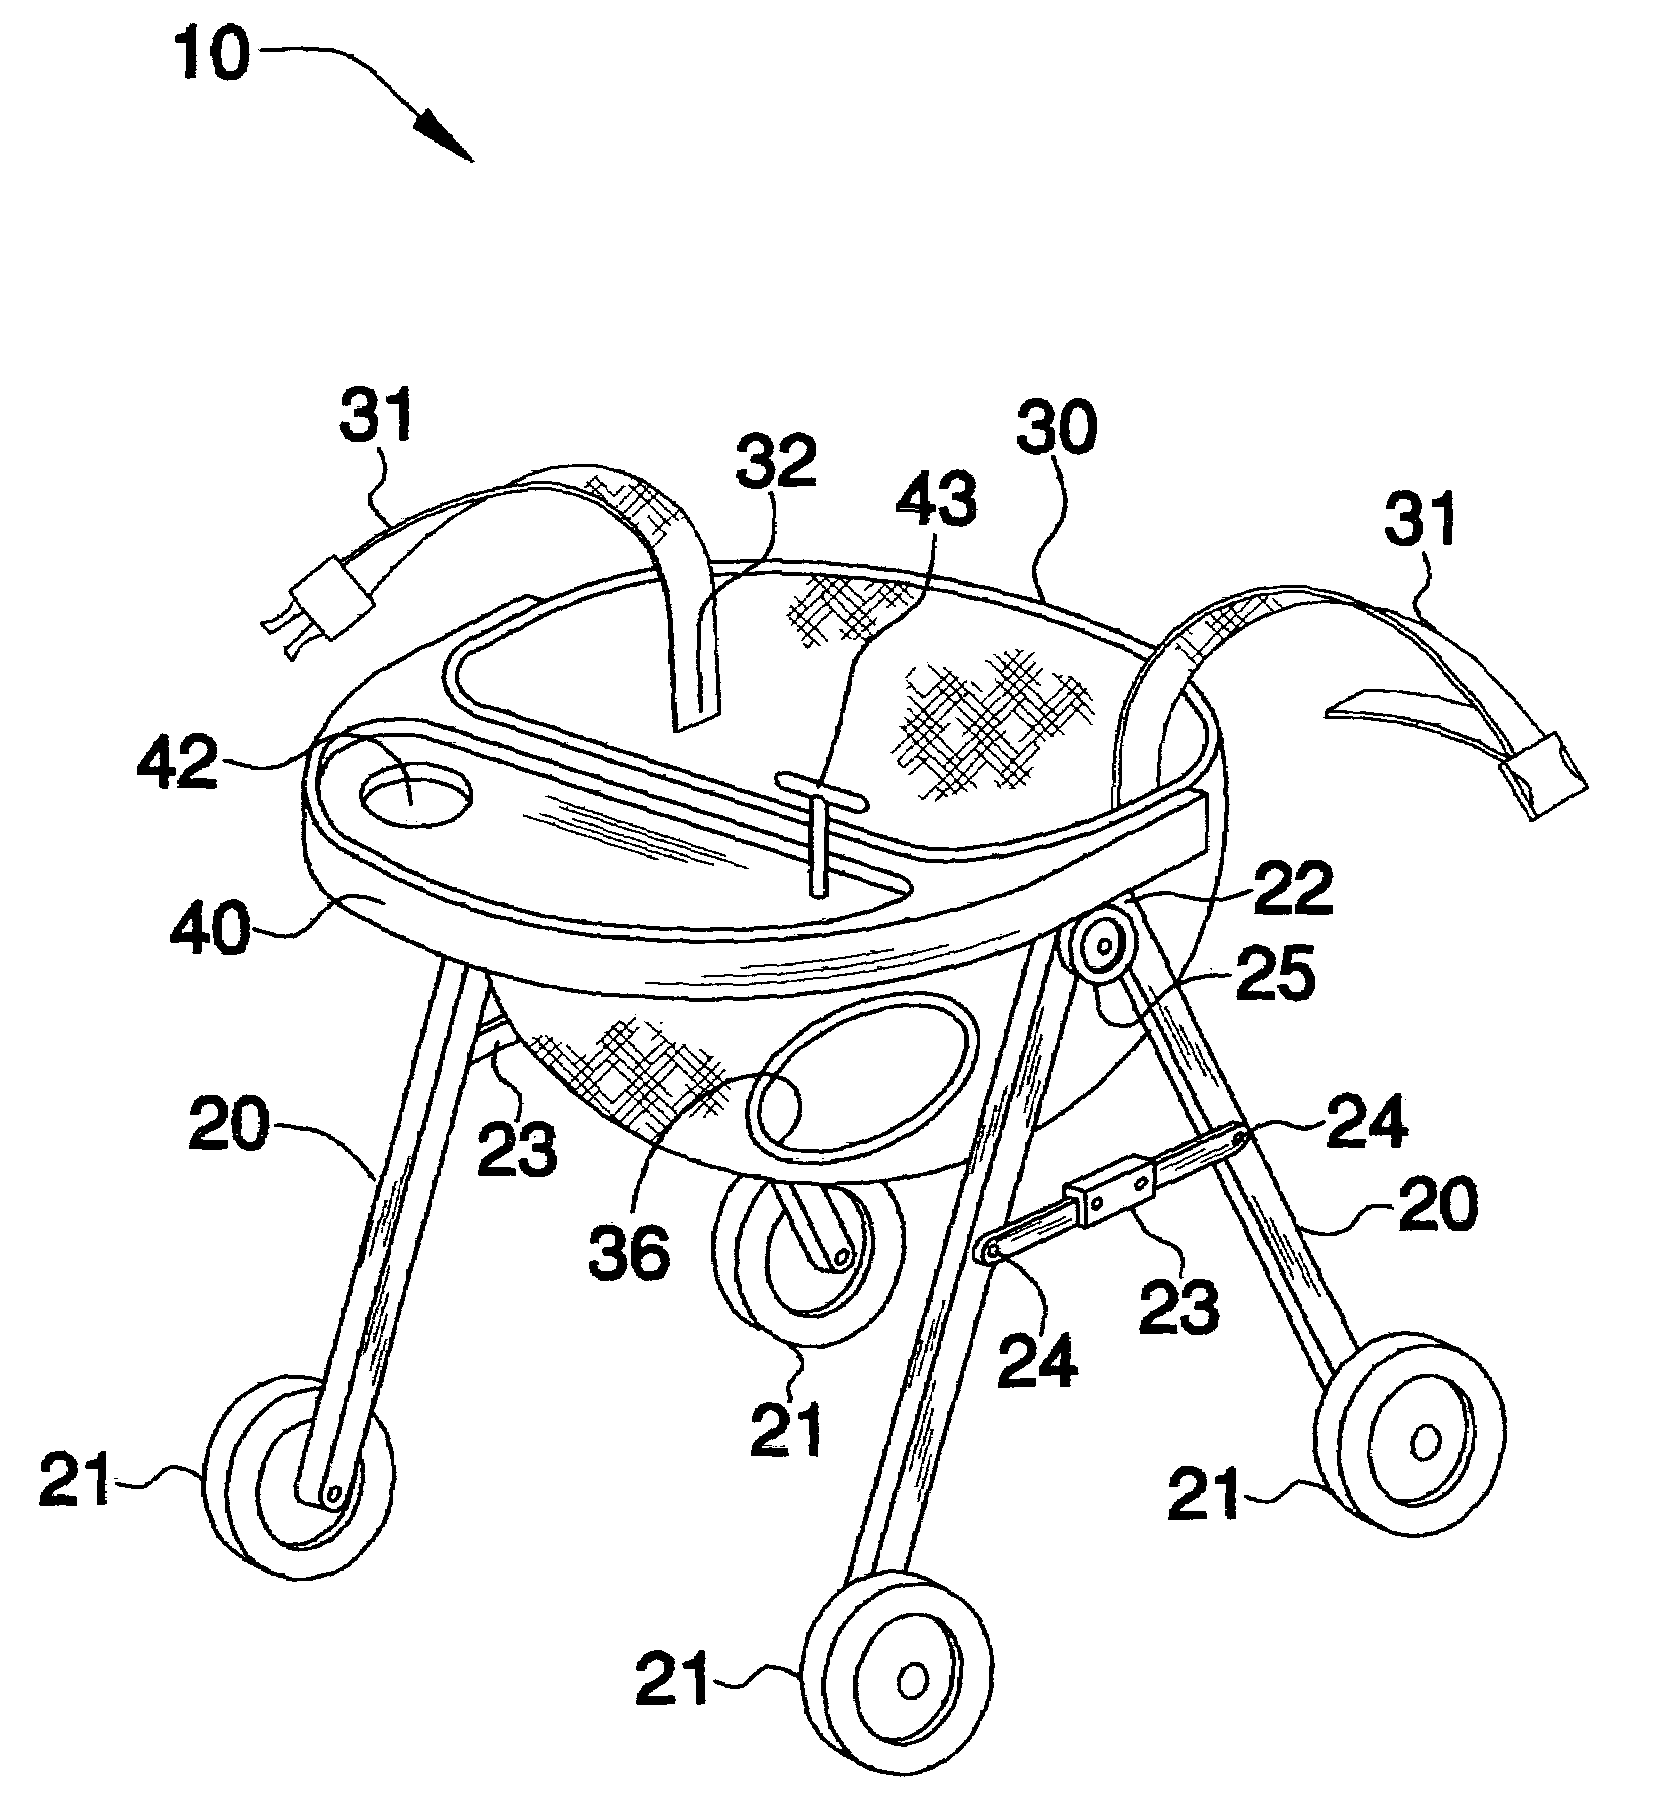 Foldable baby walker